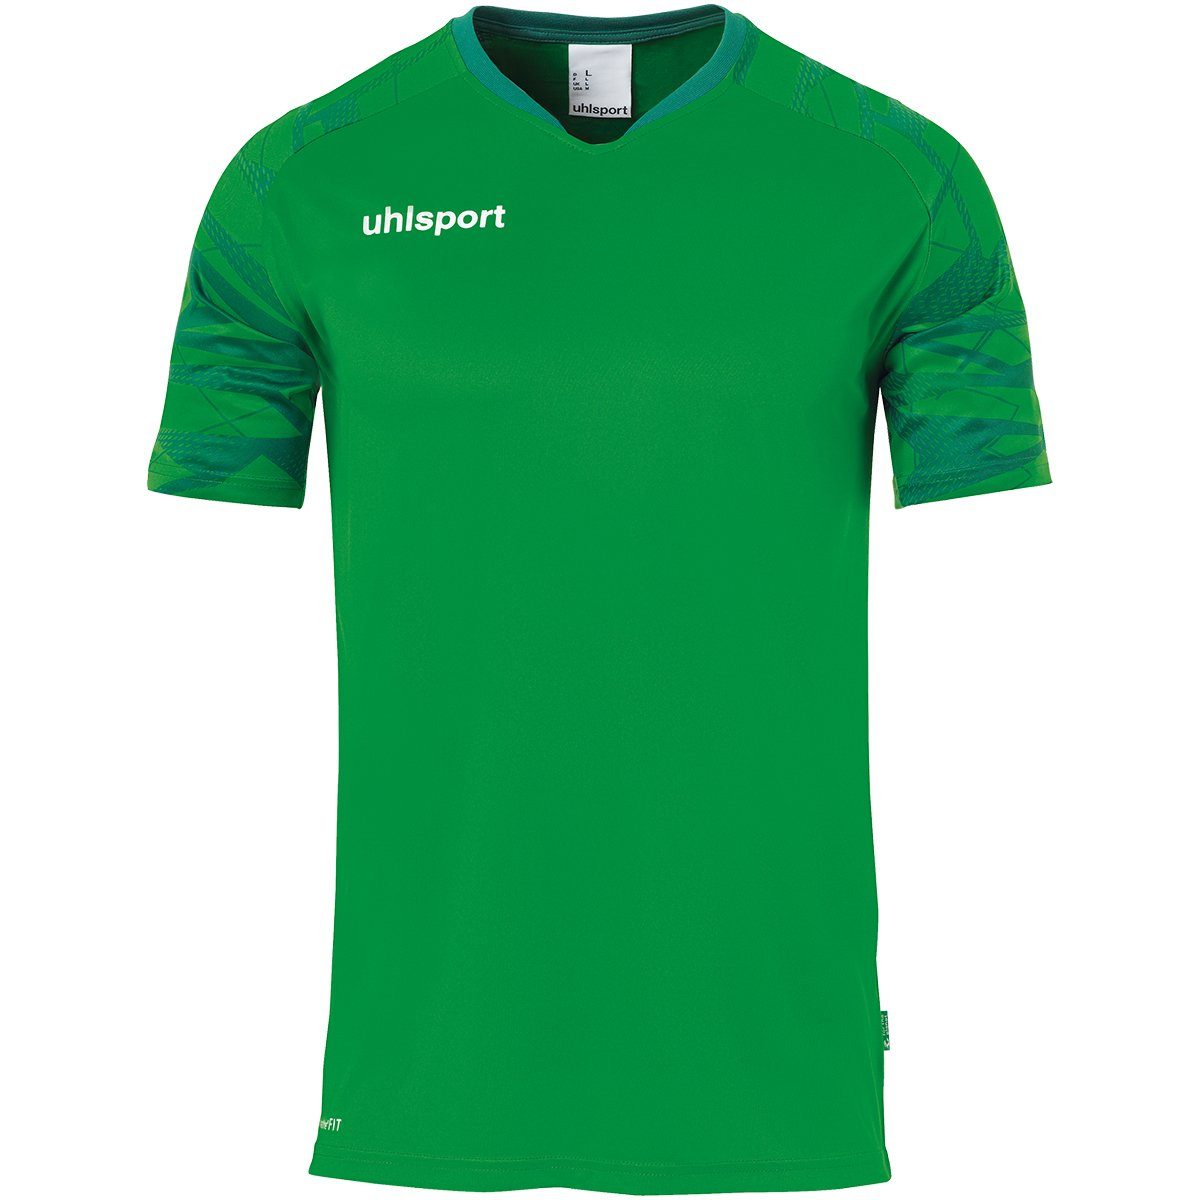 TRIKOT uhlsport KURZARM Trainings-T-Shirt atmungsaktiv Trainingsshirt grün/lagune uhlsport 25 GOAL